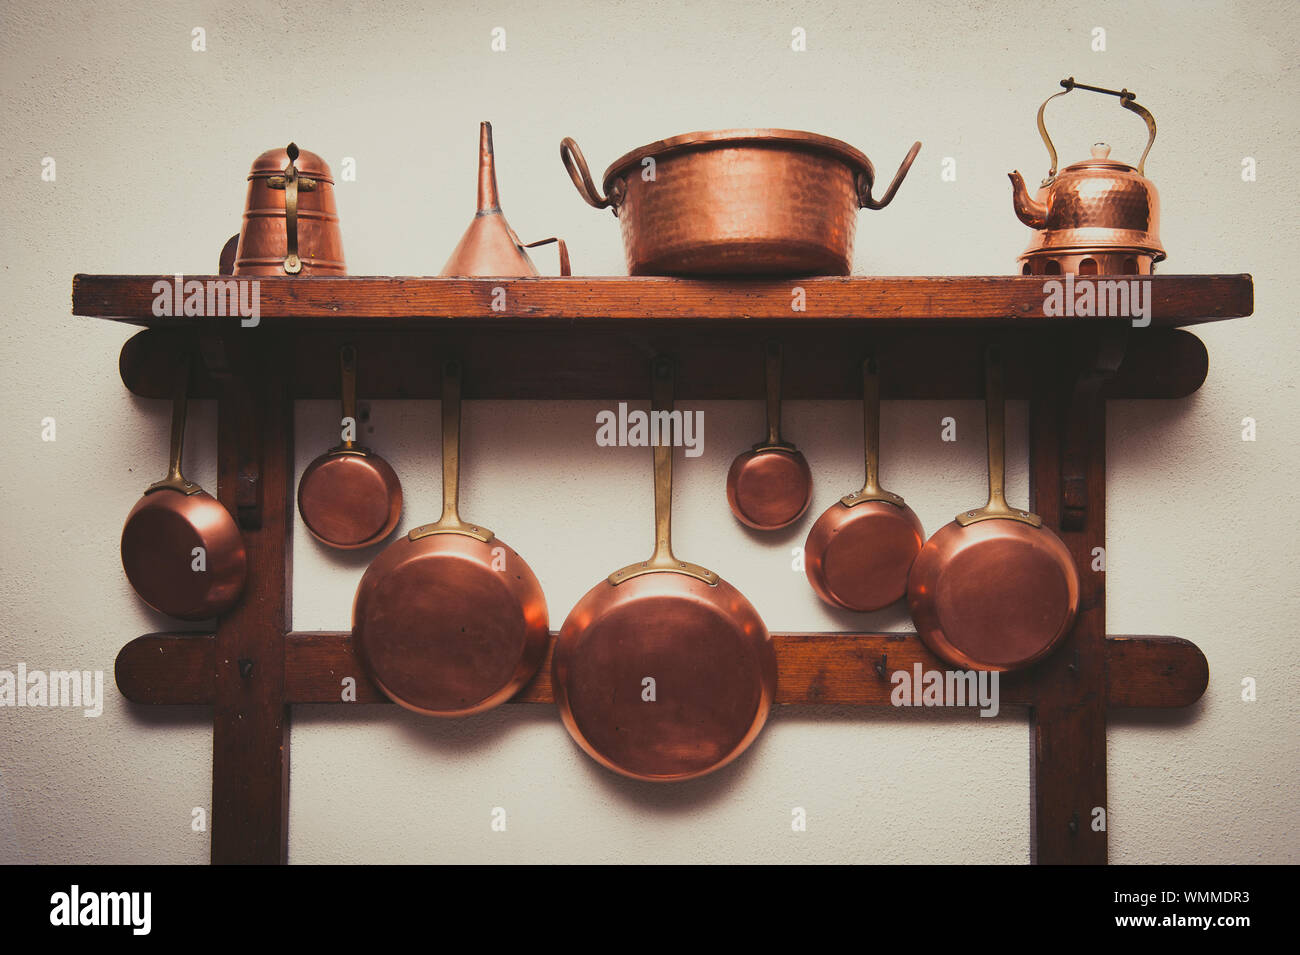 Copper Kitchen Utensils Arranged On Shelf In Kitchen Stock Photo